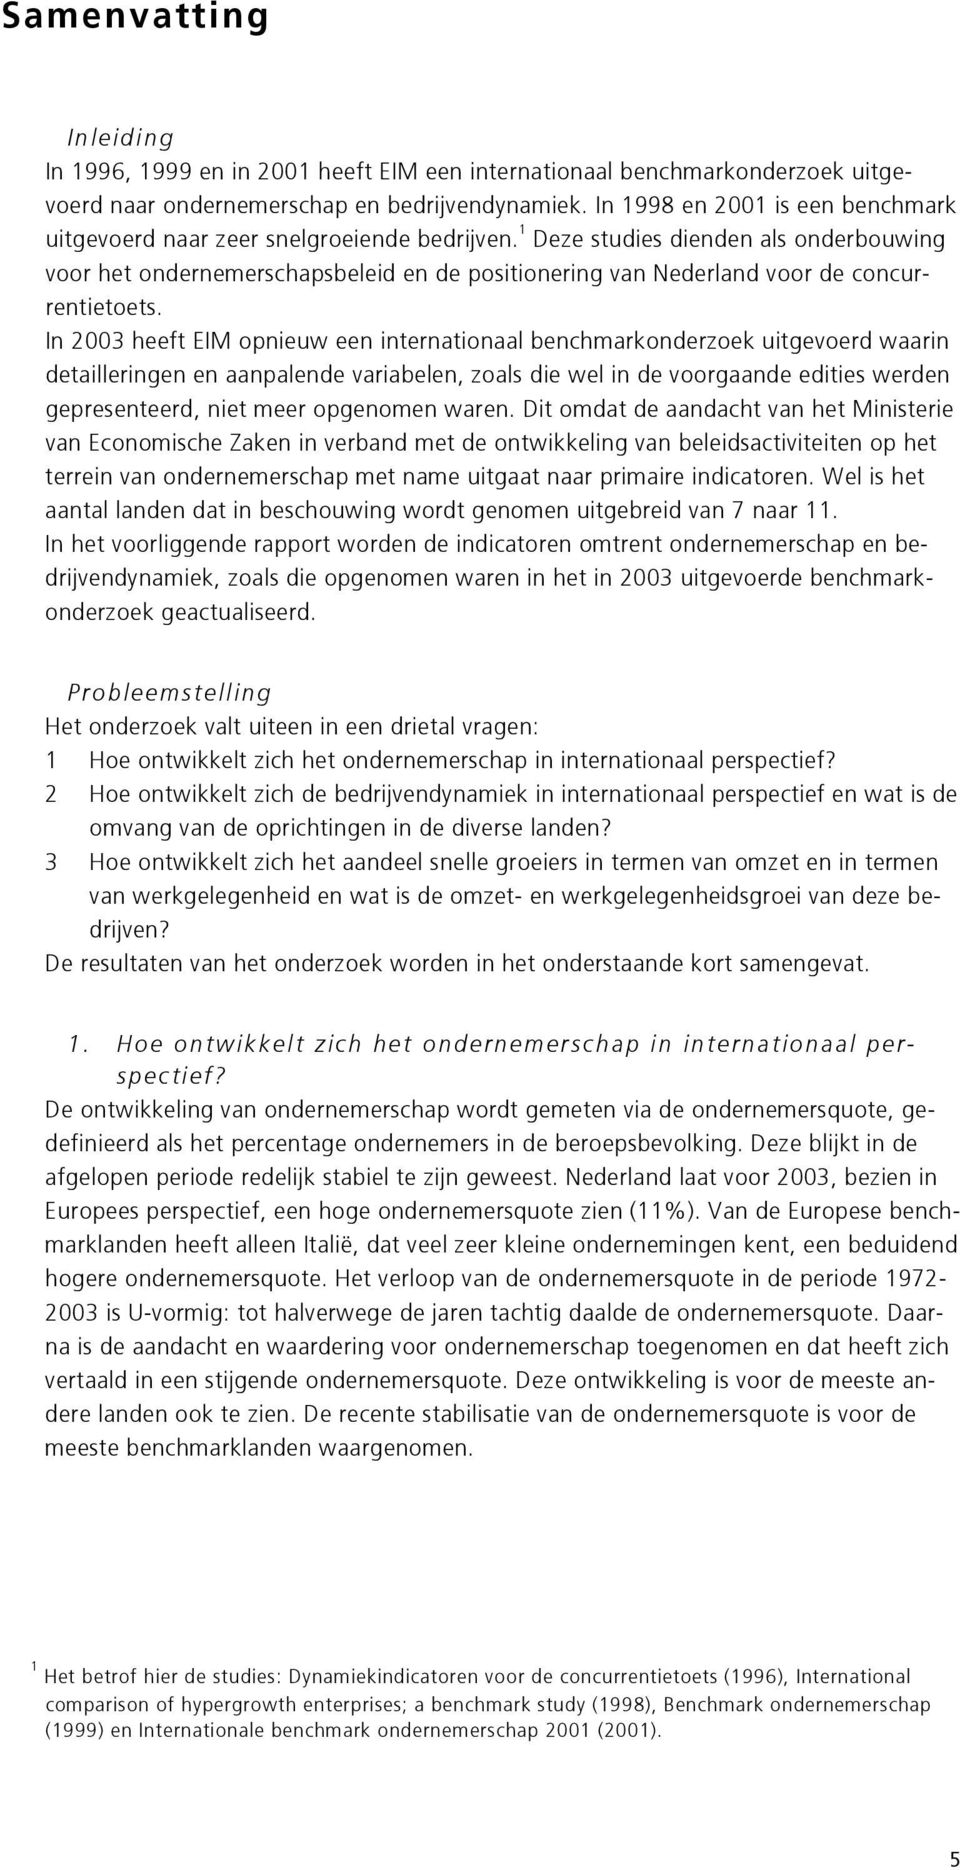 1 Deze studies dienden als onderbouwing voor het ondernemerschapsbeleid en de positionering van Nederland voor de concurrentietoets.